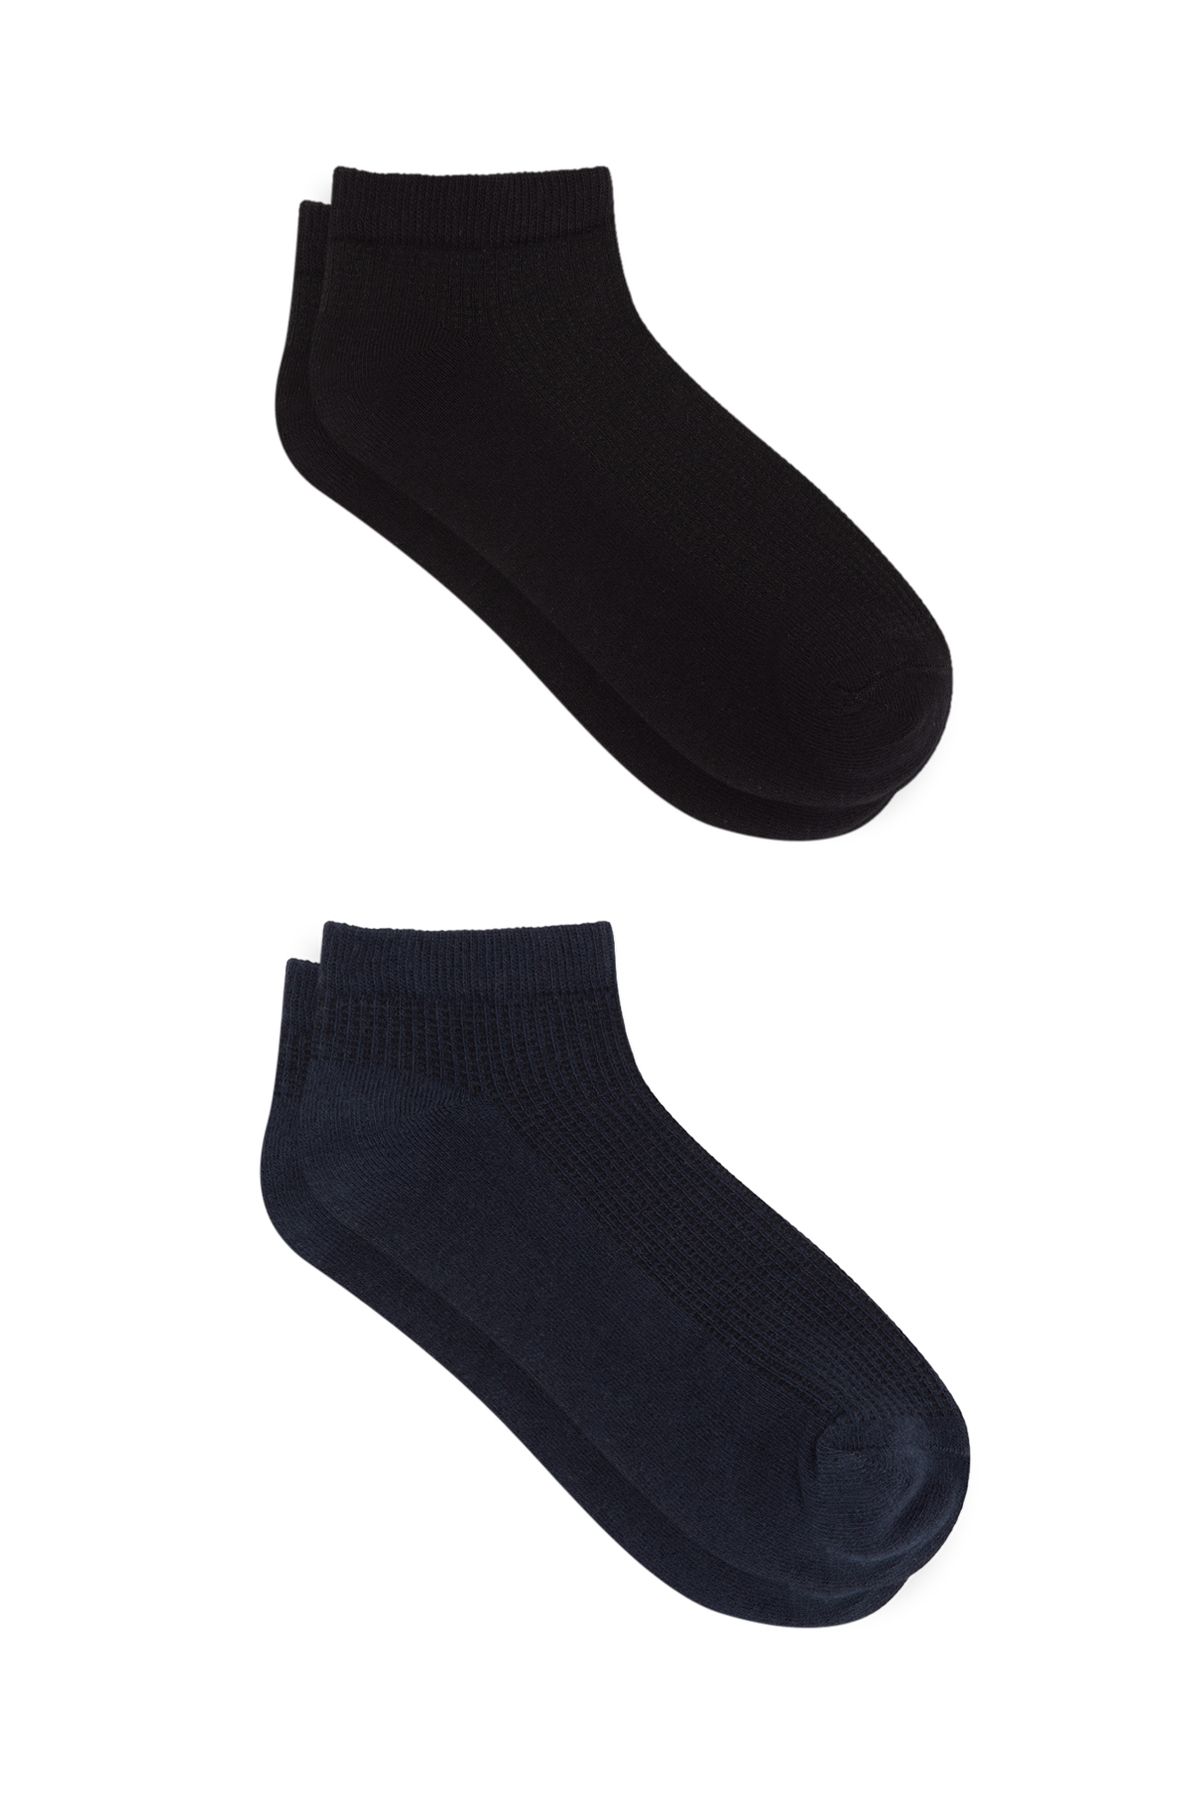 Mavi 2li Siyah Patik Çorap Seti 197123-900